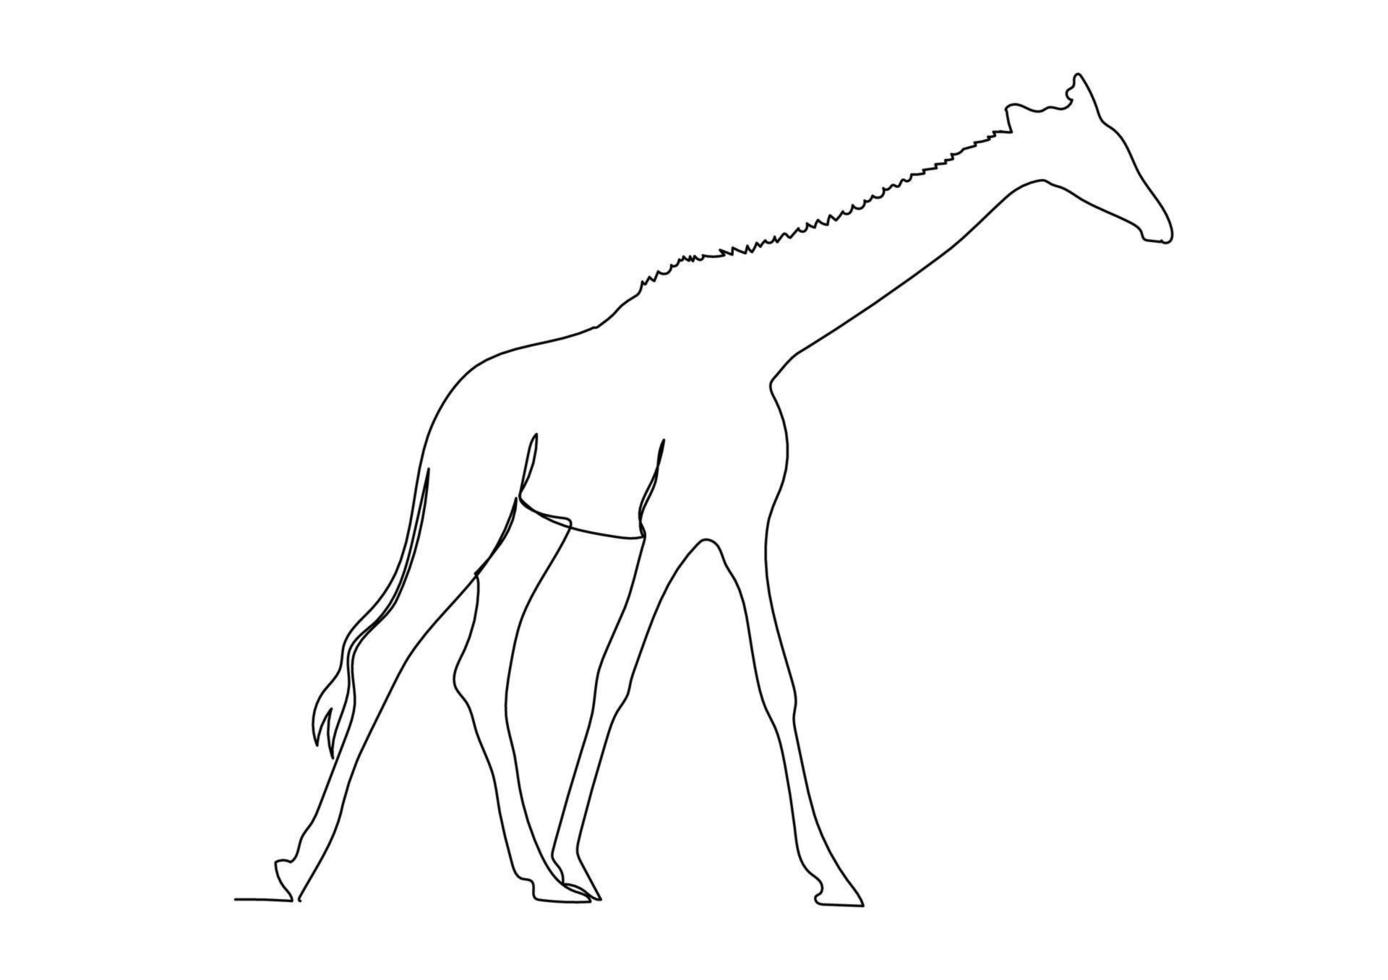 girafa de desenho de linha contínua isolada na ilustração vetorial de fundo branco vetor